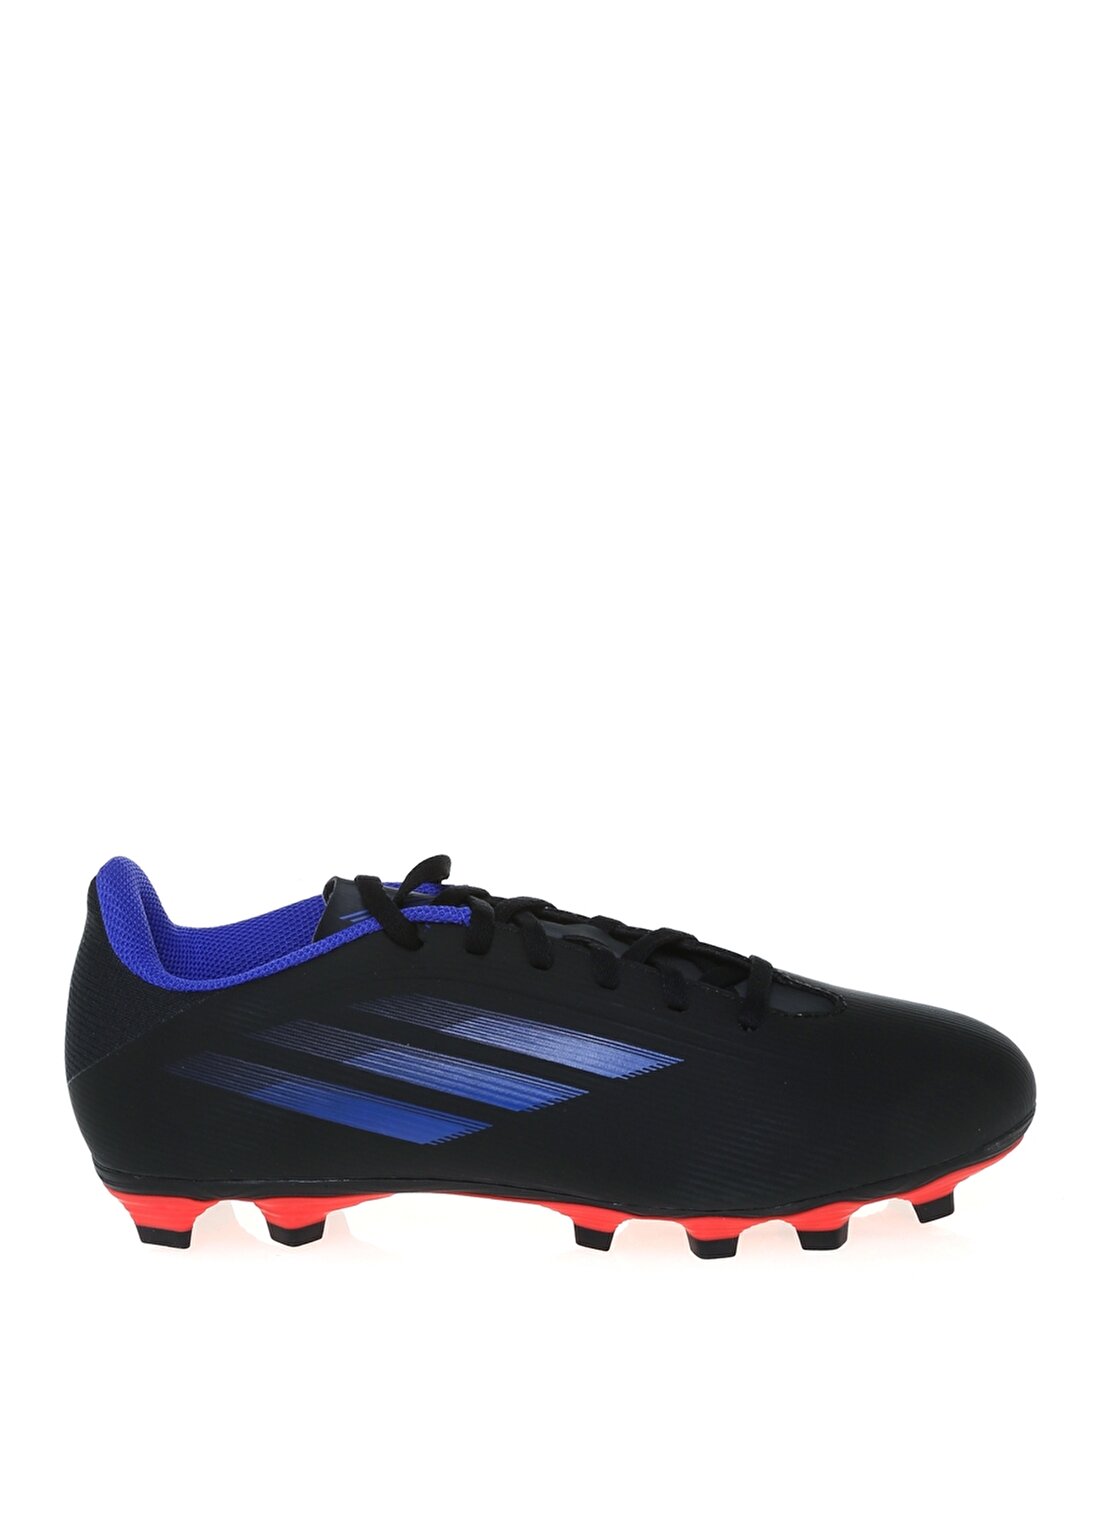 Adidas Fy3292 X Speedflow.4 Fxg Siyah - Mavi - Sarı Erkek Futbol Ayakkabısı